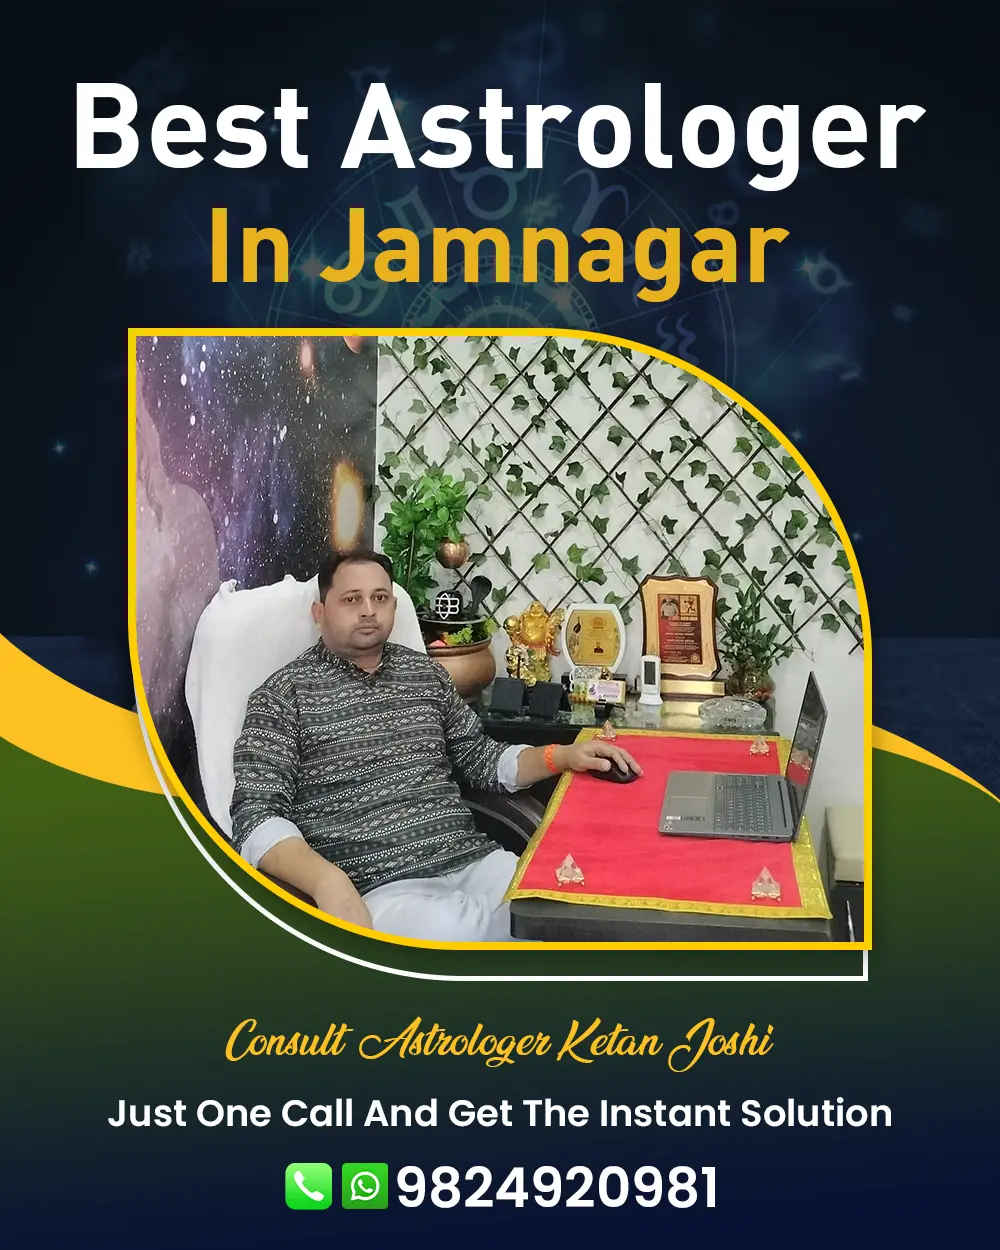 Best Astrologer In Jamnagar